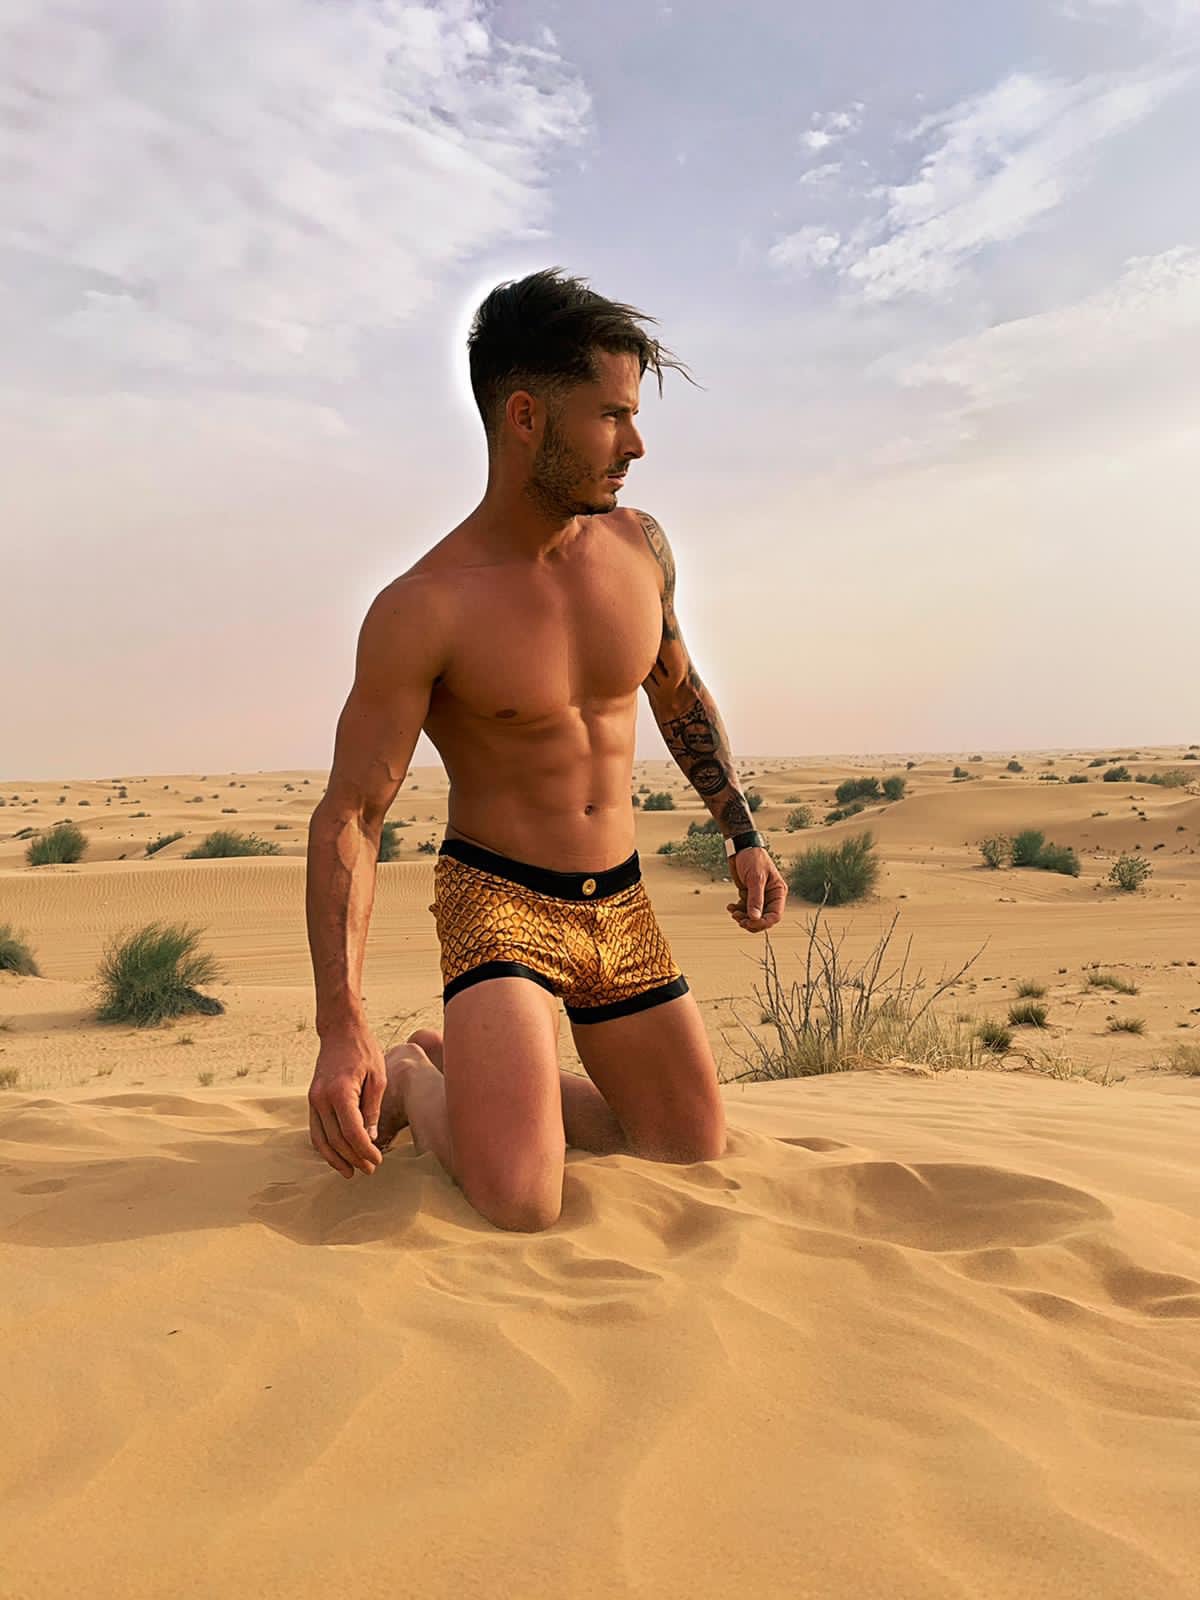 Modèle masculin agenouillé dans le désert, portant le boxer "Gold Croco" de By Radouane, avec un motif crocodile doré sur soie lyonnaise, évoquant luxe et exotisme.